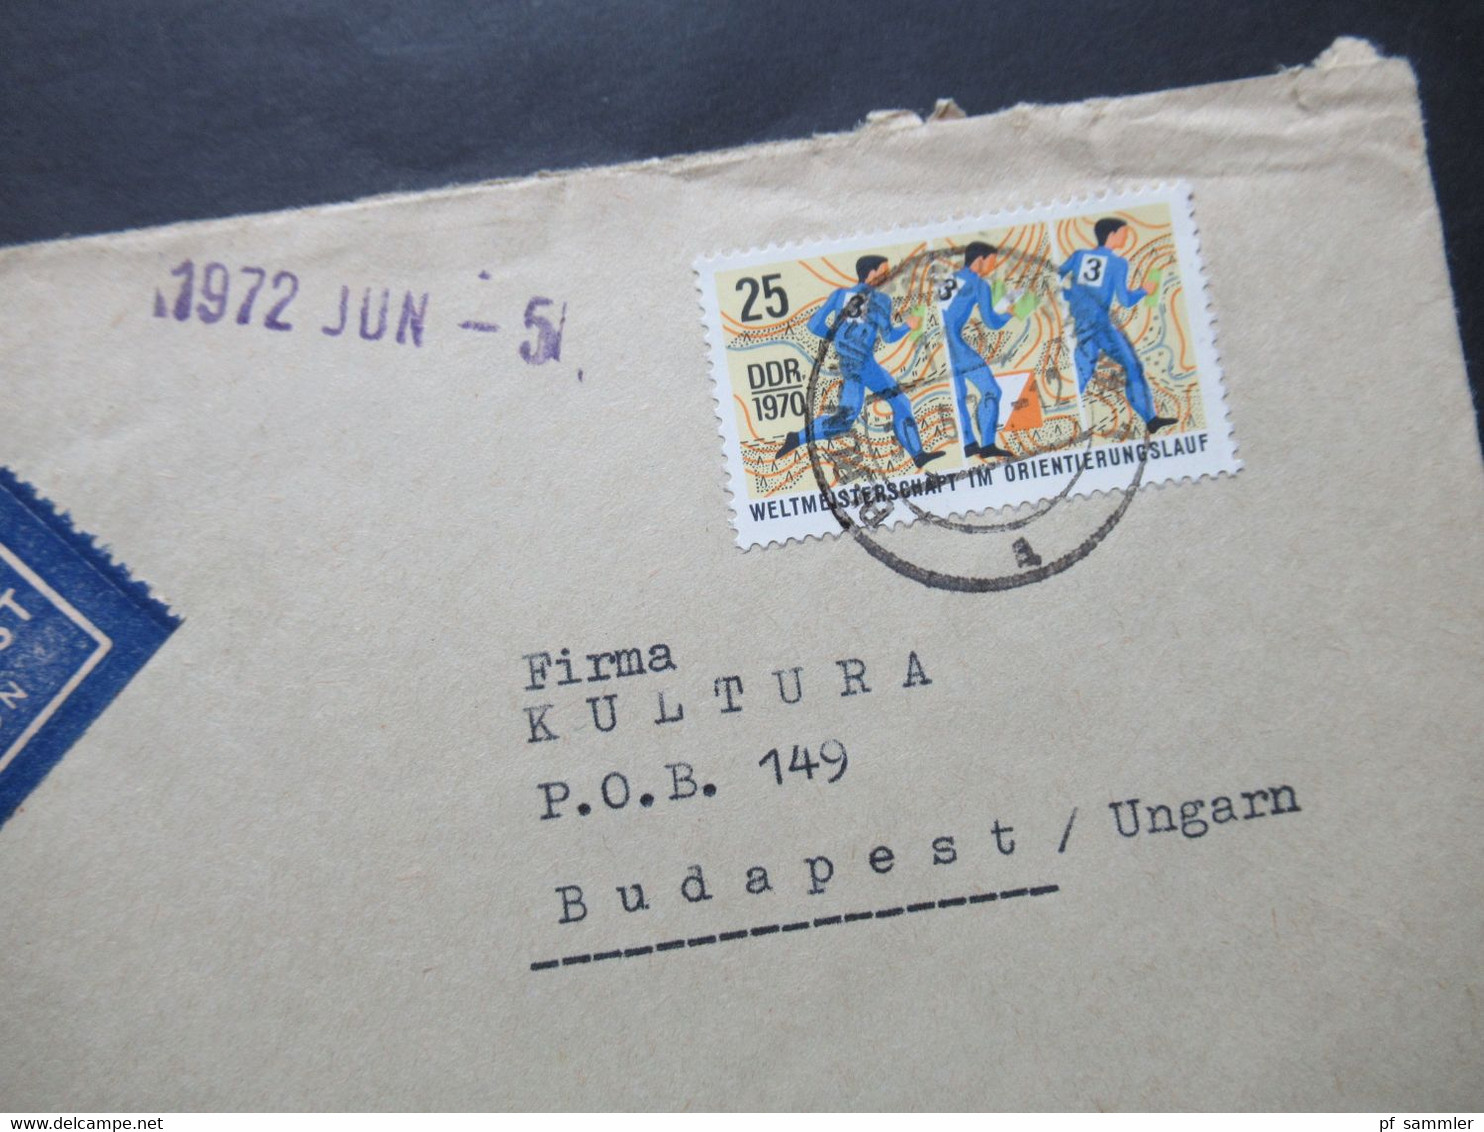 DDR 1972 2 Auslandsbriefe Nach Ungarn 1x Luftpost Umschläge VEB Deutsche Schallplatten / Bereich Absatz Usw. - Lettres & Documents